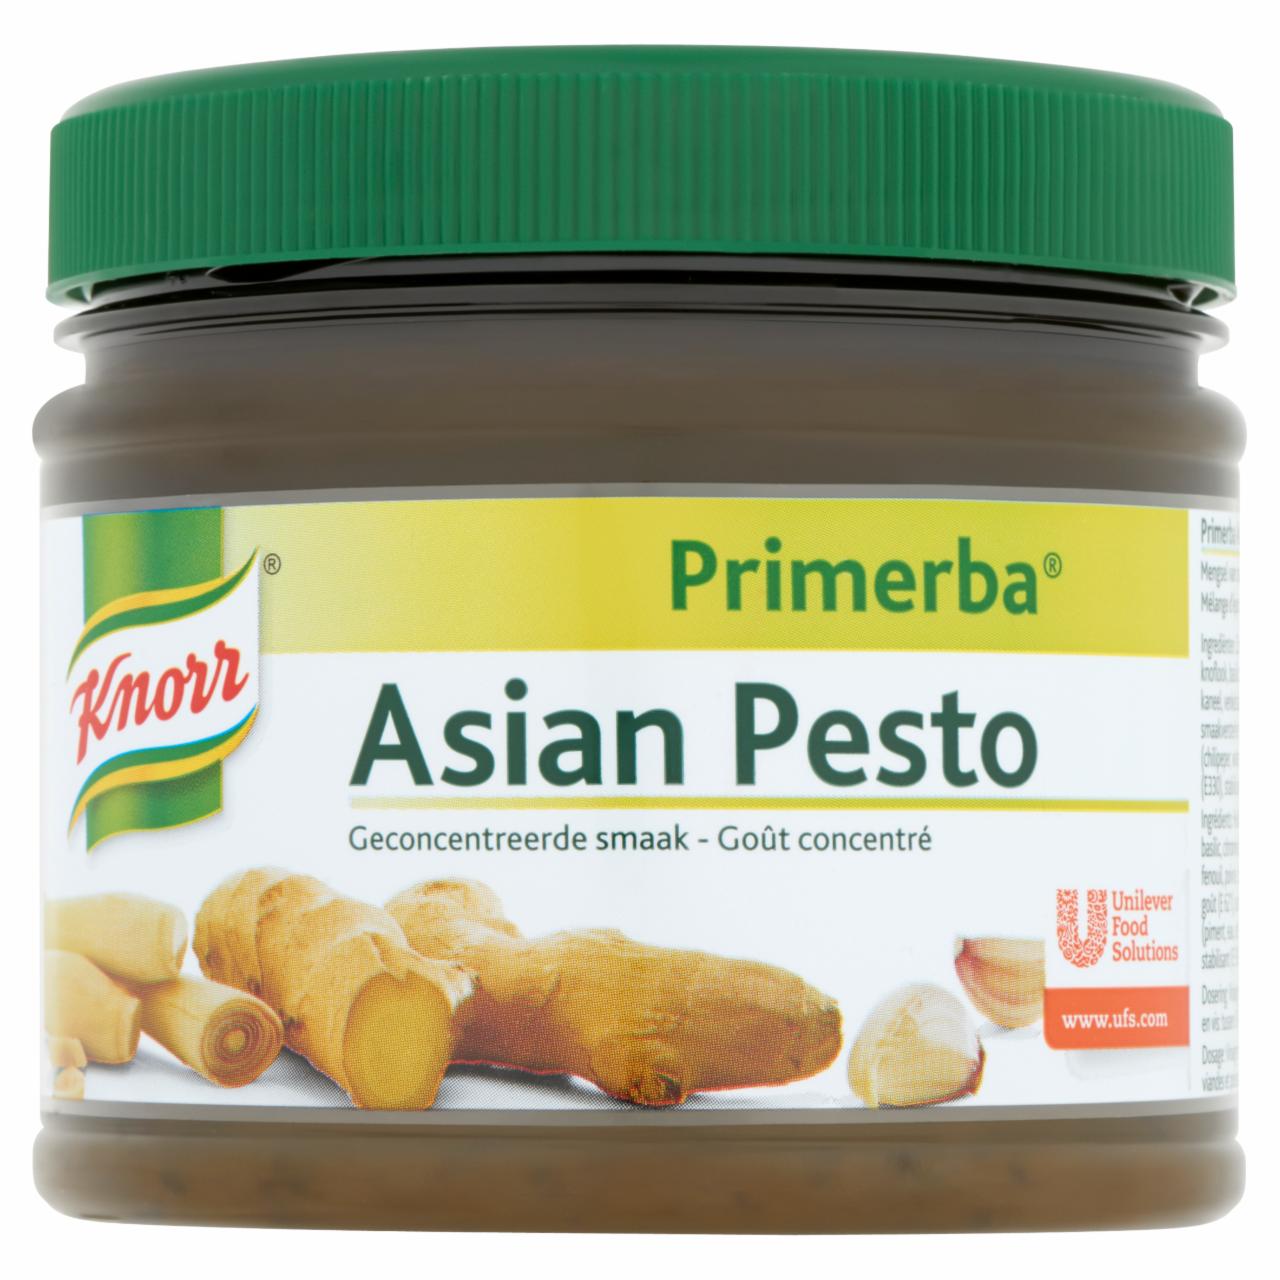 Képek - Knorr Primerba ázsiai pesto fűszerkeverék növényi olajban 340 g